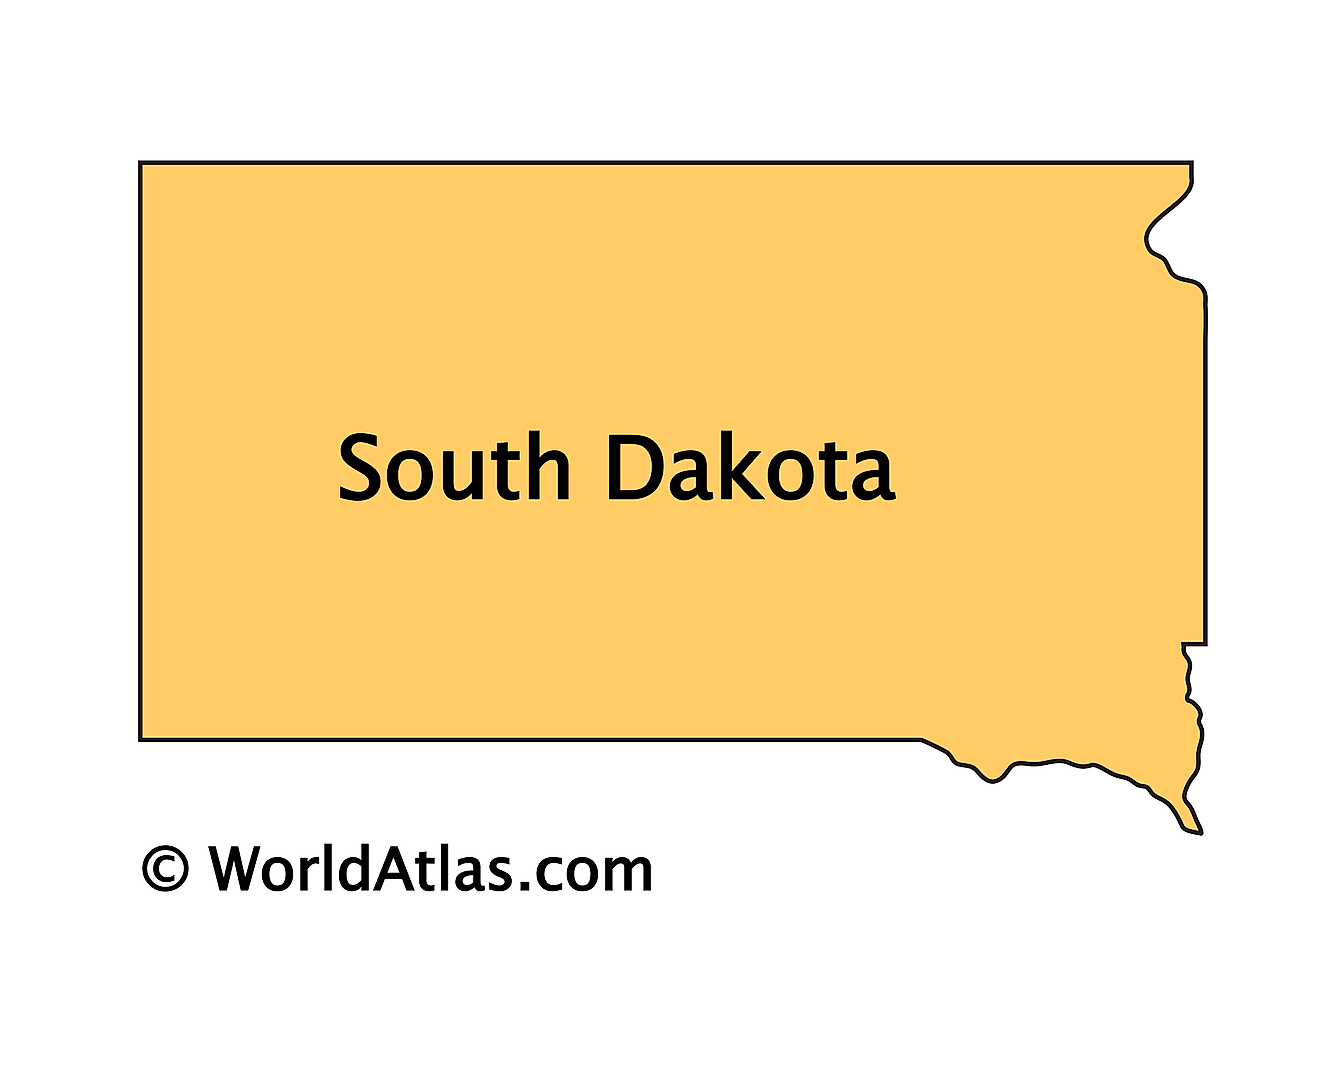 Mapa de contorno de Dakota del Sur